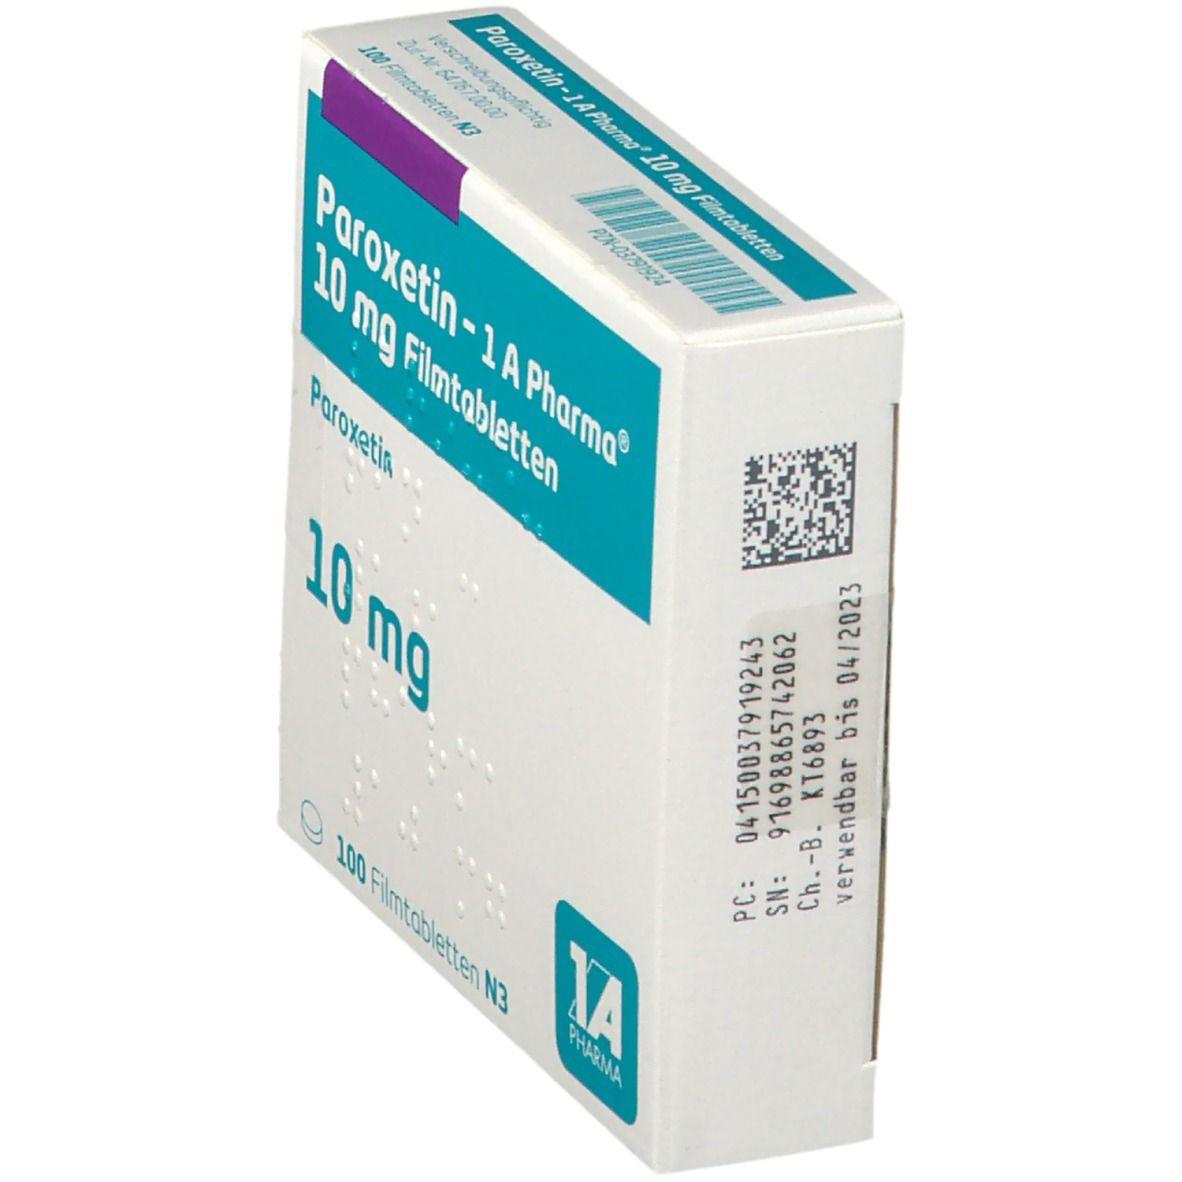 Paroxetin 1A Pharma® 10Mg